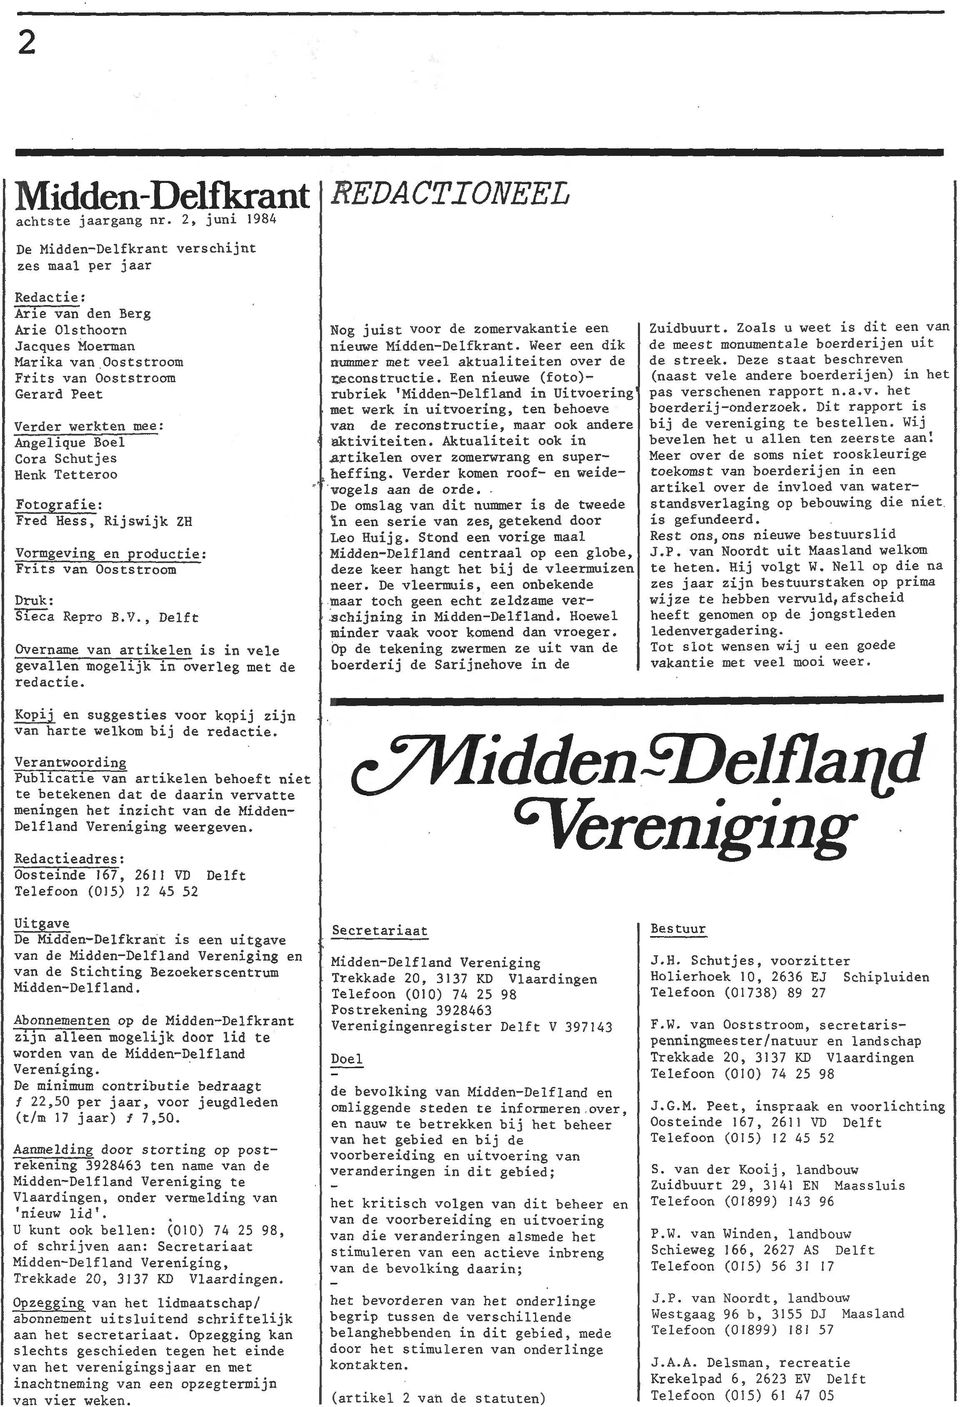 Repro B.V., Delft Overname van artikelen is in vele gevallen mogelijk in overleg met de redactie. Nog juist voor de zomervakantie een nieuwe Midden-Delfkrant.